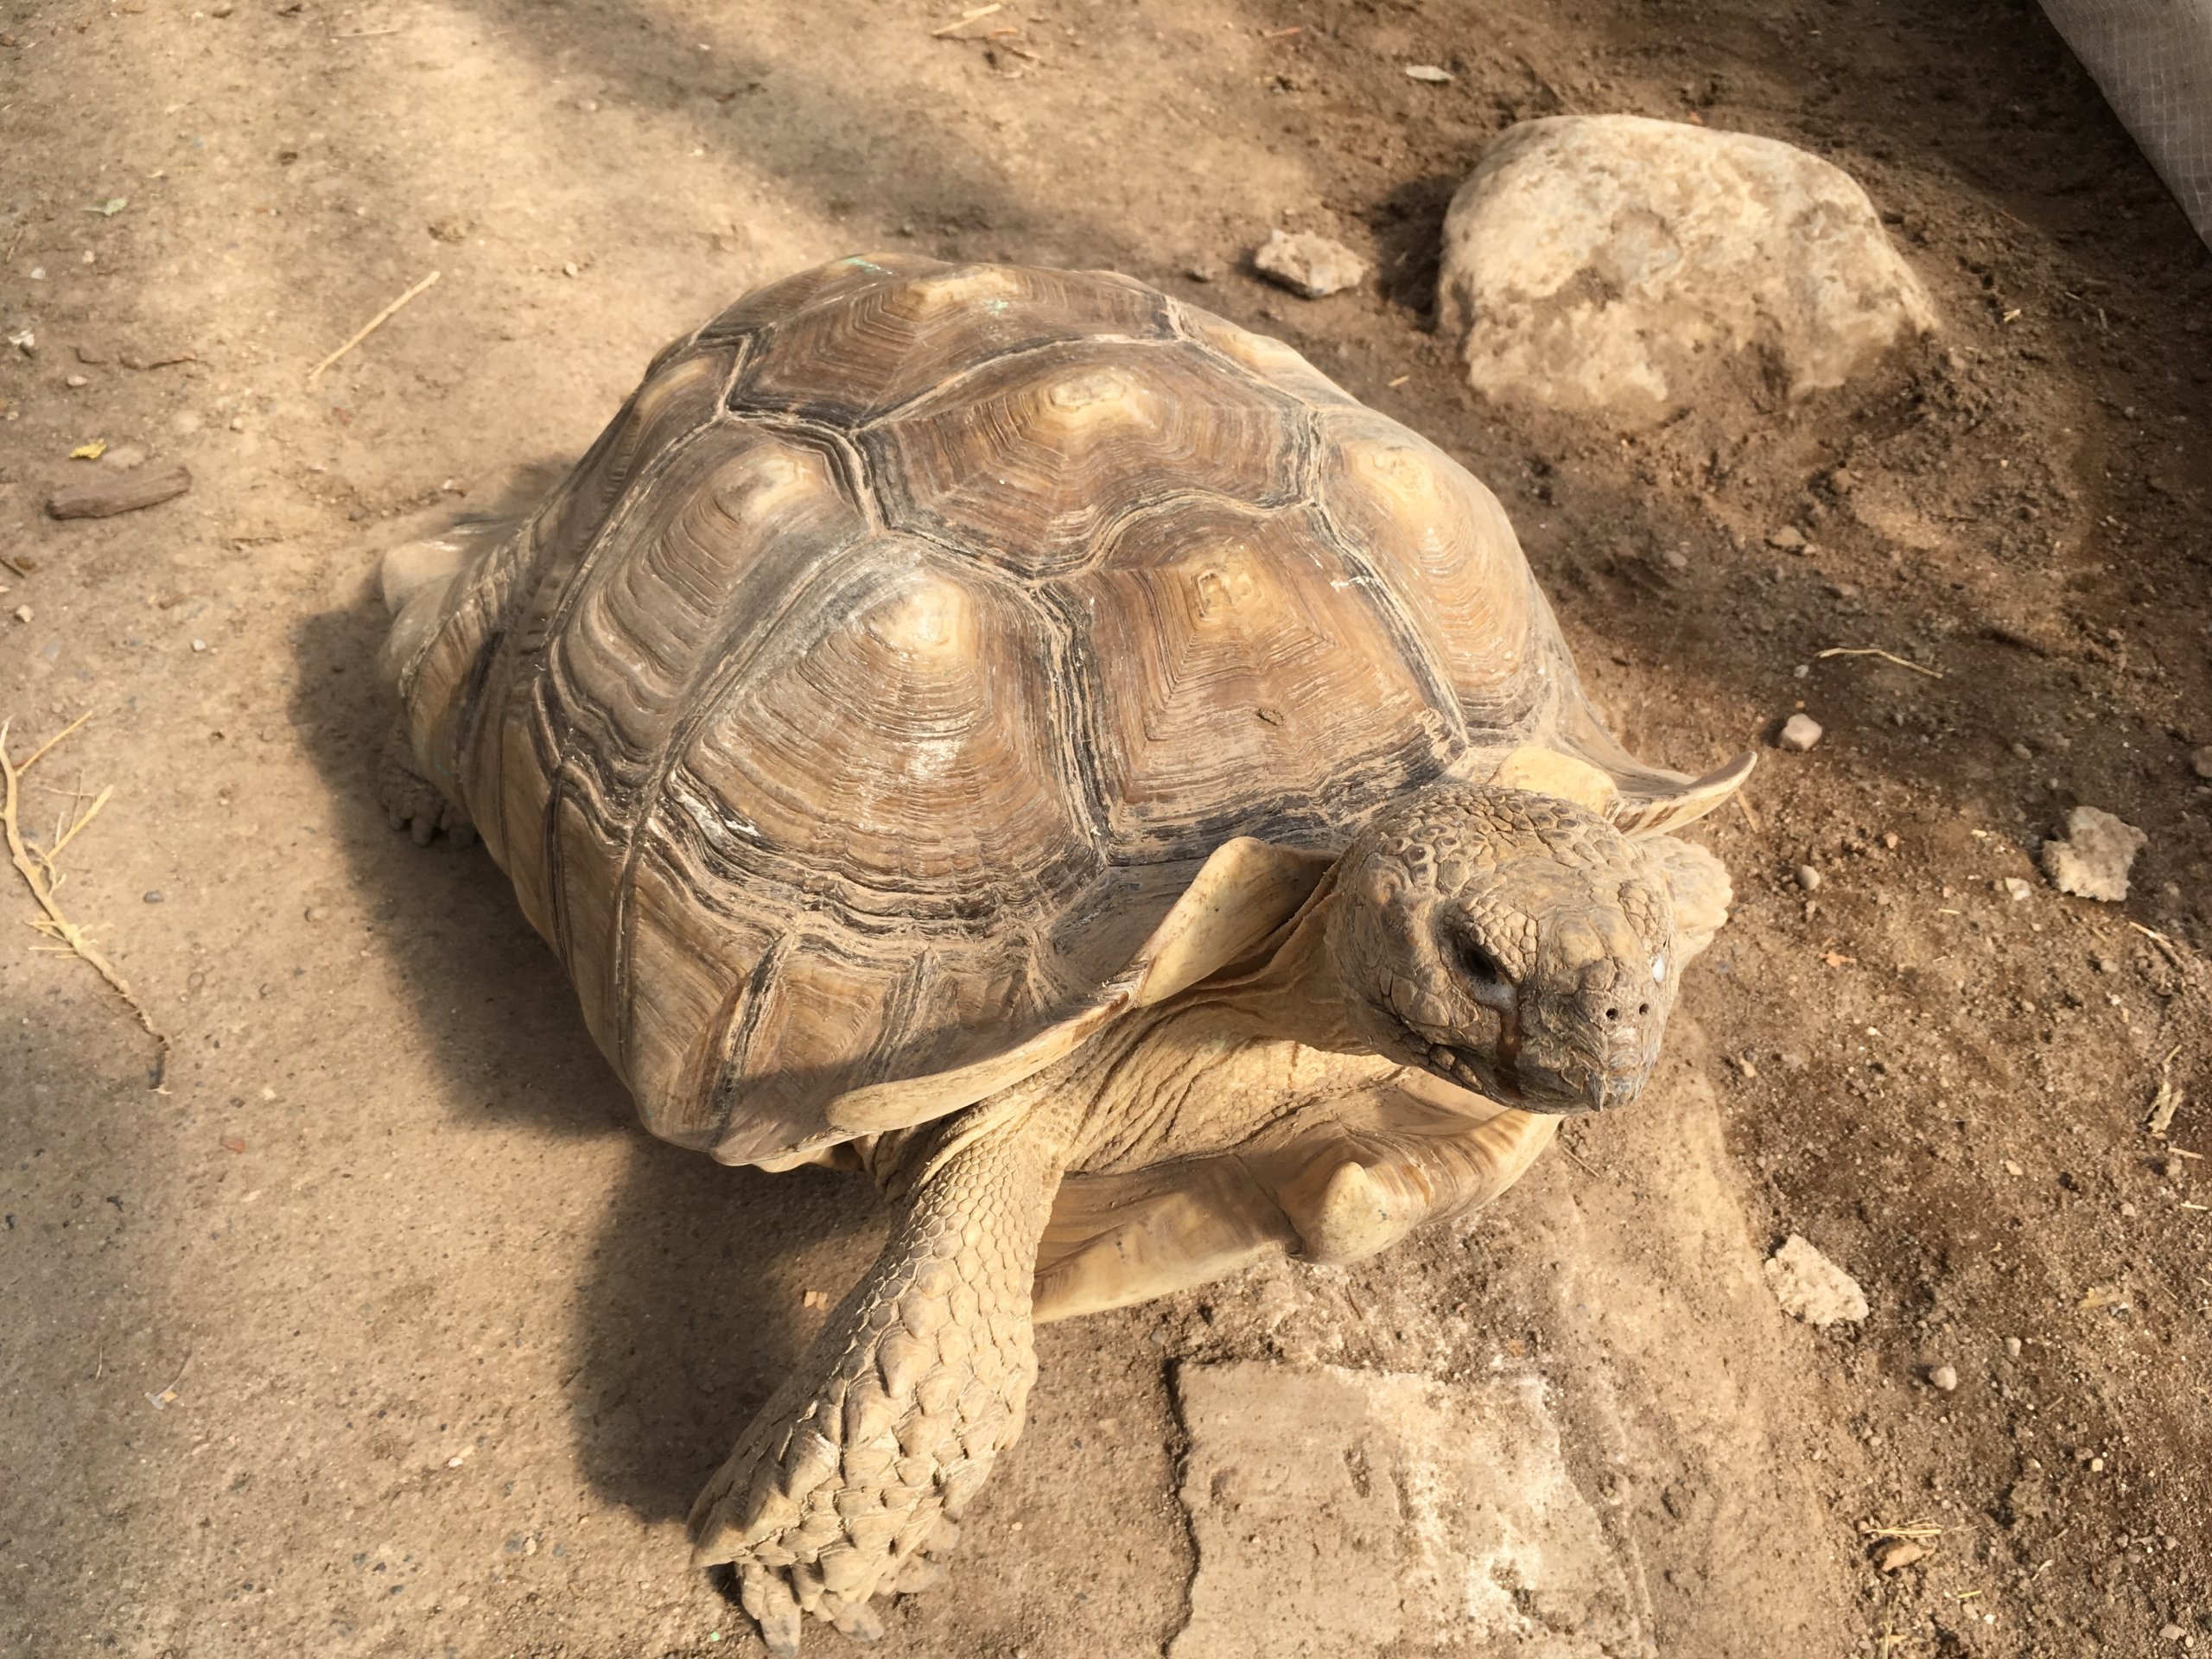 Sulcata tortoise enduring eye-discharge at a roadside zoo